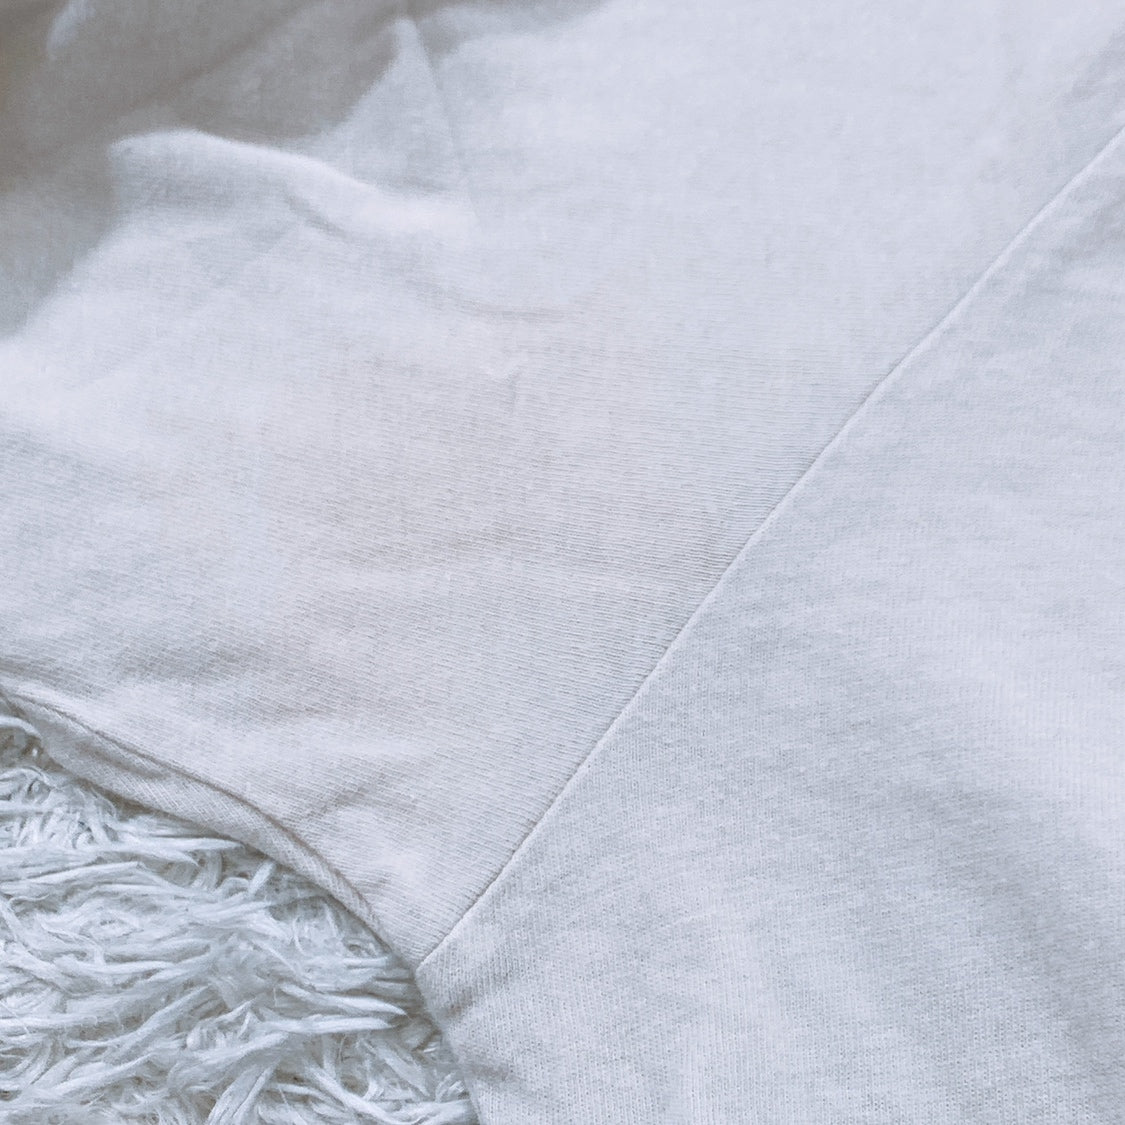 レディースM 2 quadro 長袖Tシャツ 無地 白 ホワイト Uネック コットン100 カジュアルTシャツ シンプル クアドロ 【15953】